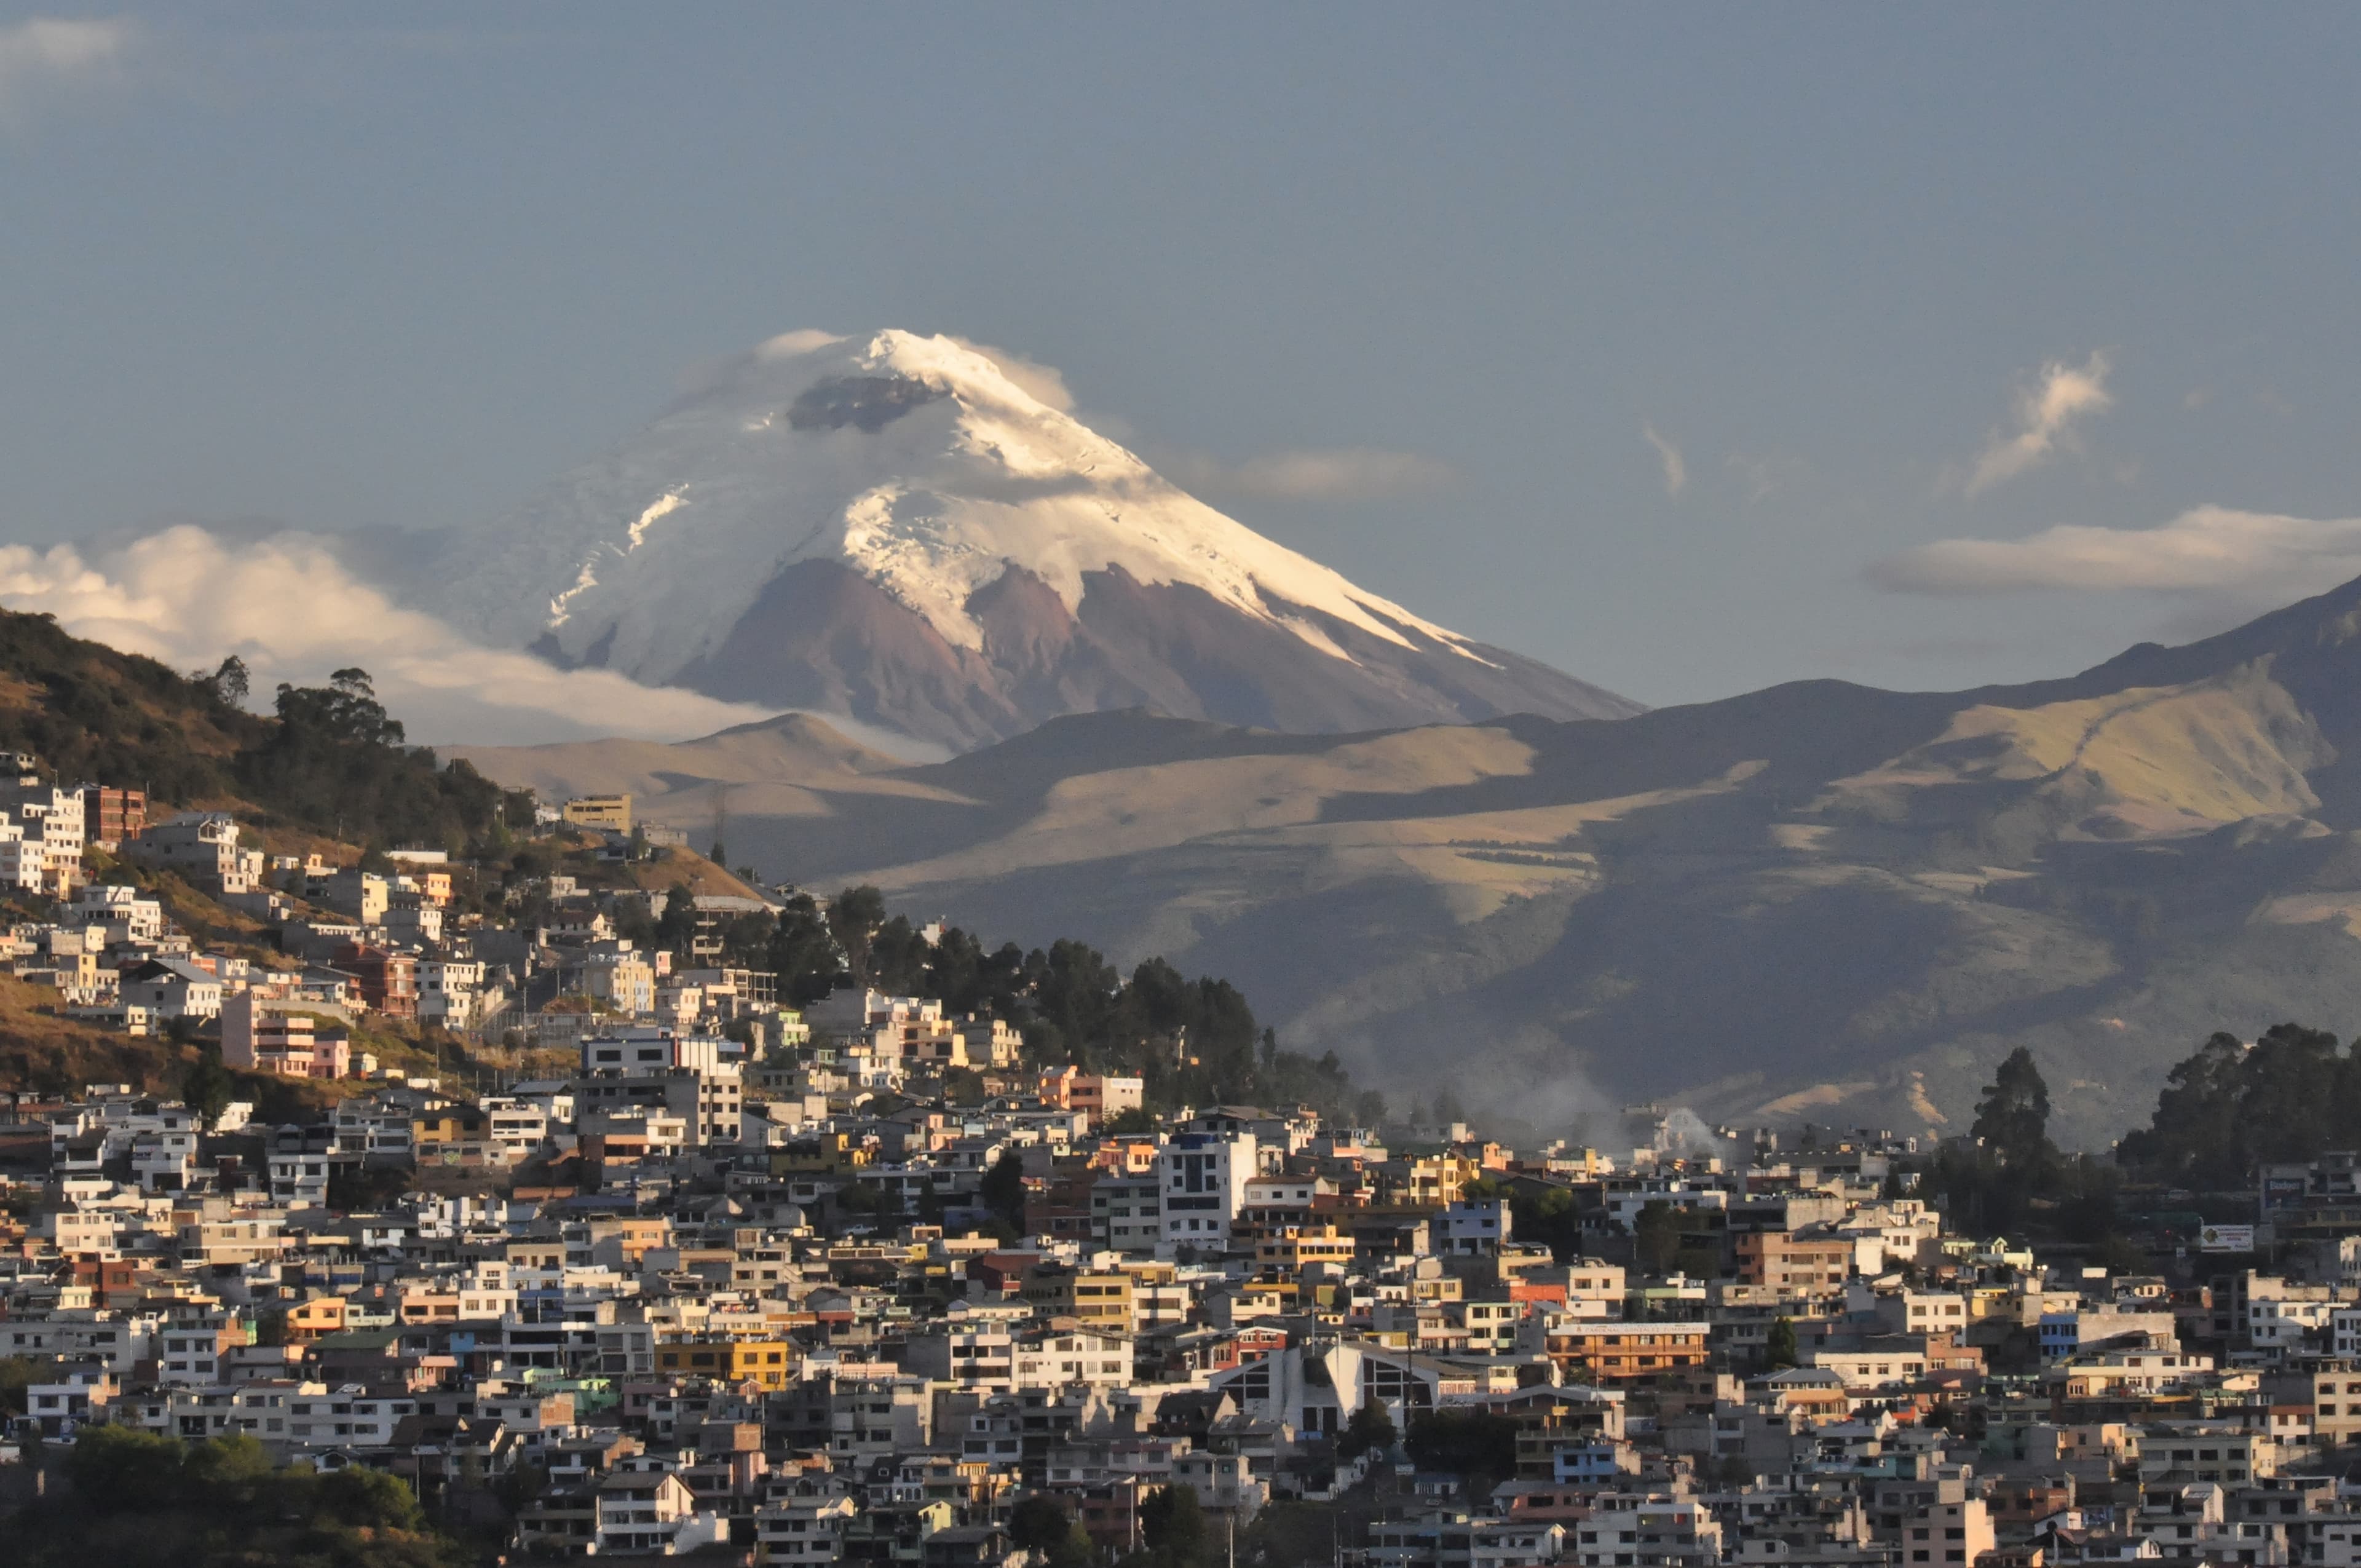 Cotopaxi volcano looms over Quito, Ecuador